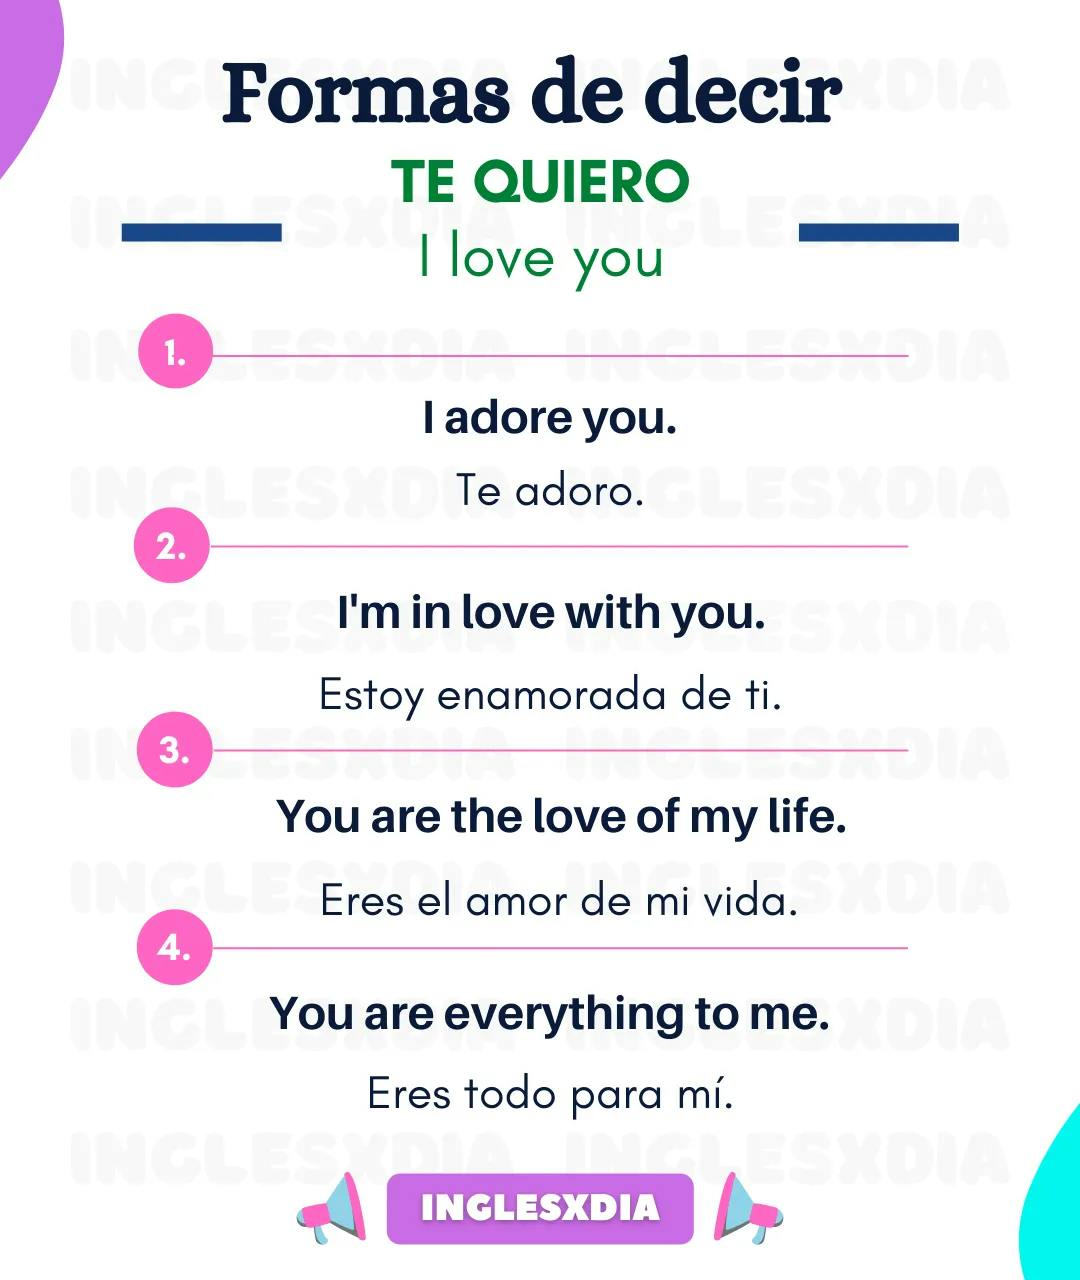 Curso de inglés en línea: formas de decir te quiero en inglés